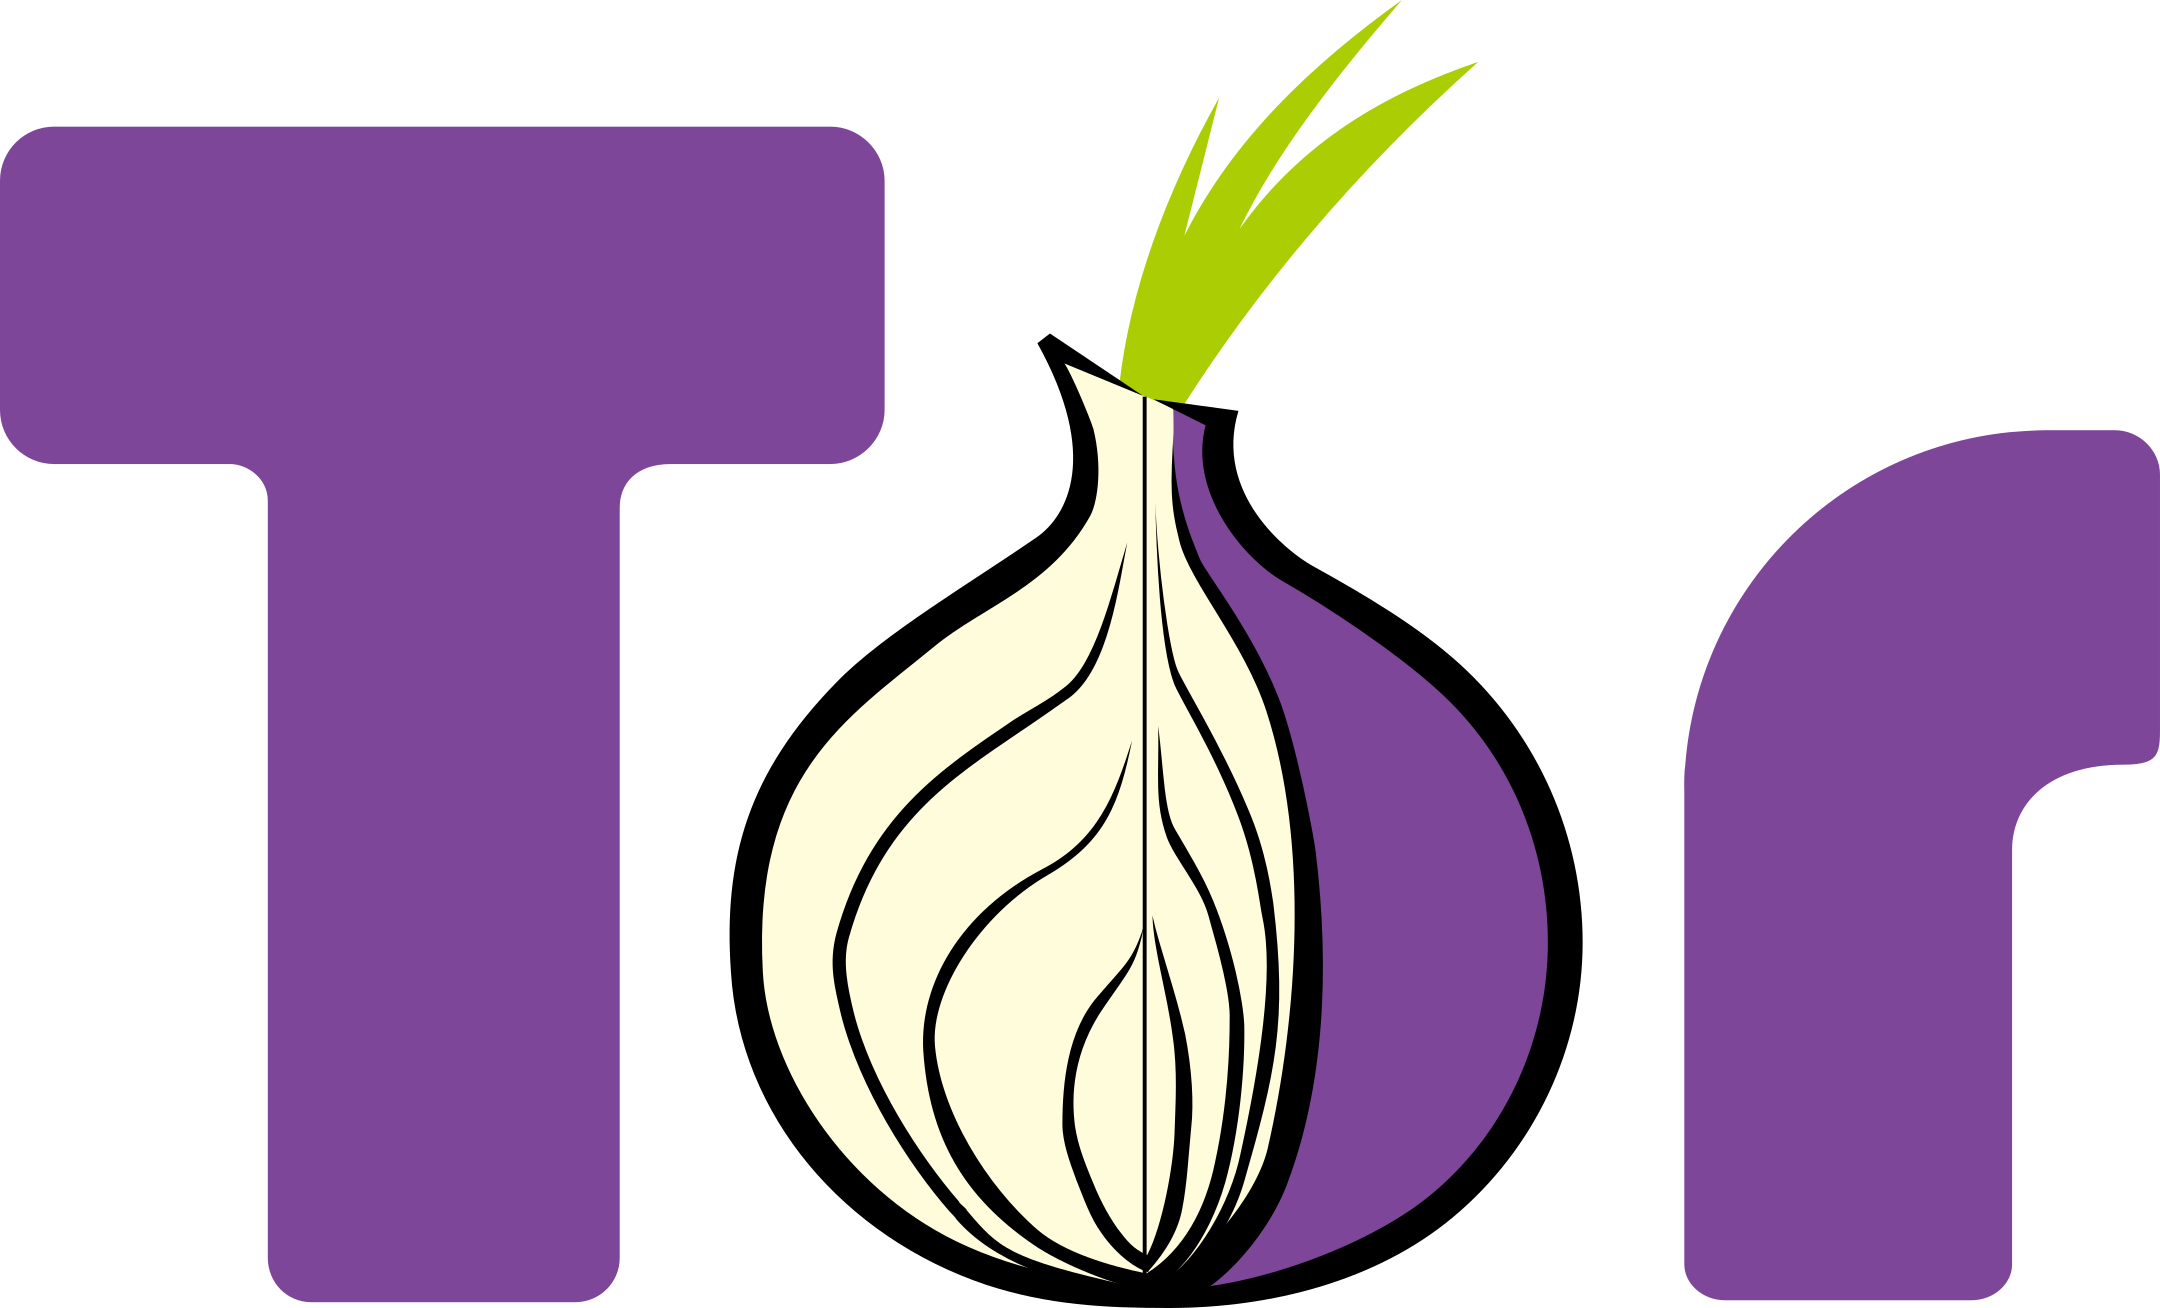 tor logo 1 - TOR Logo